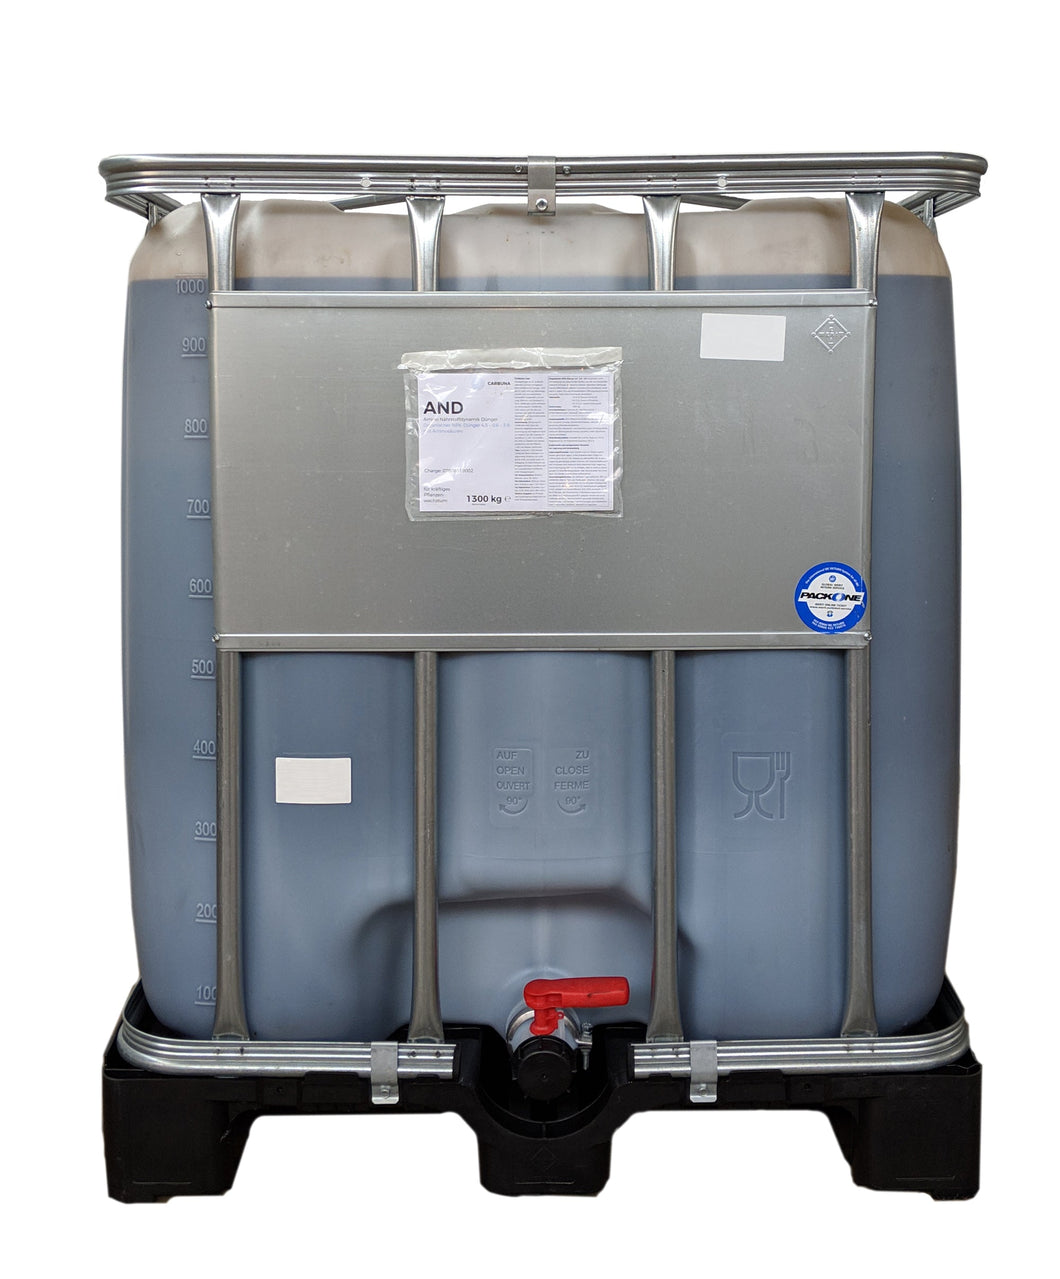 Ein IBC Industriebehälter für Flüssigkeiten mit ca. 1300 LiternCarbuna AND